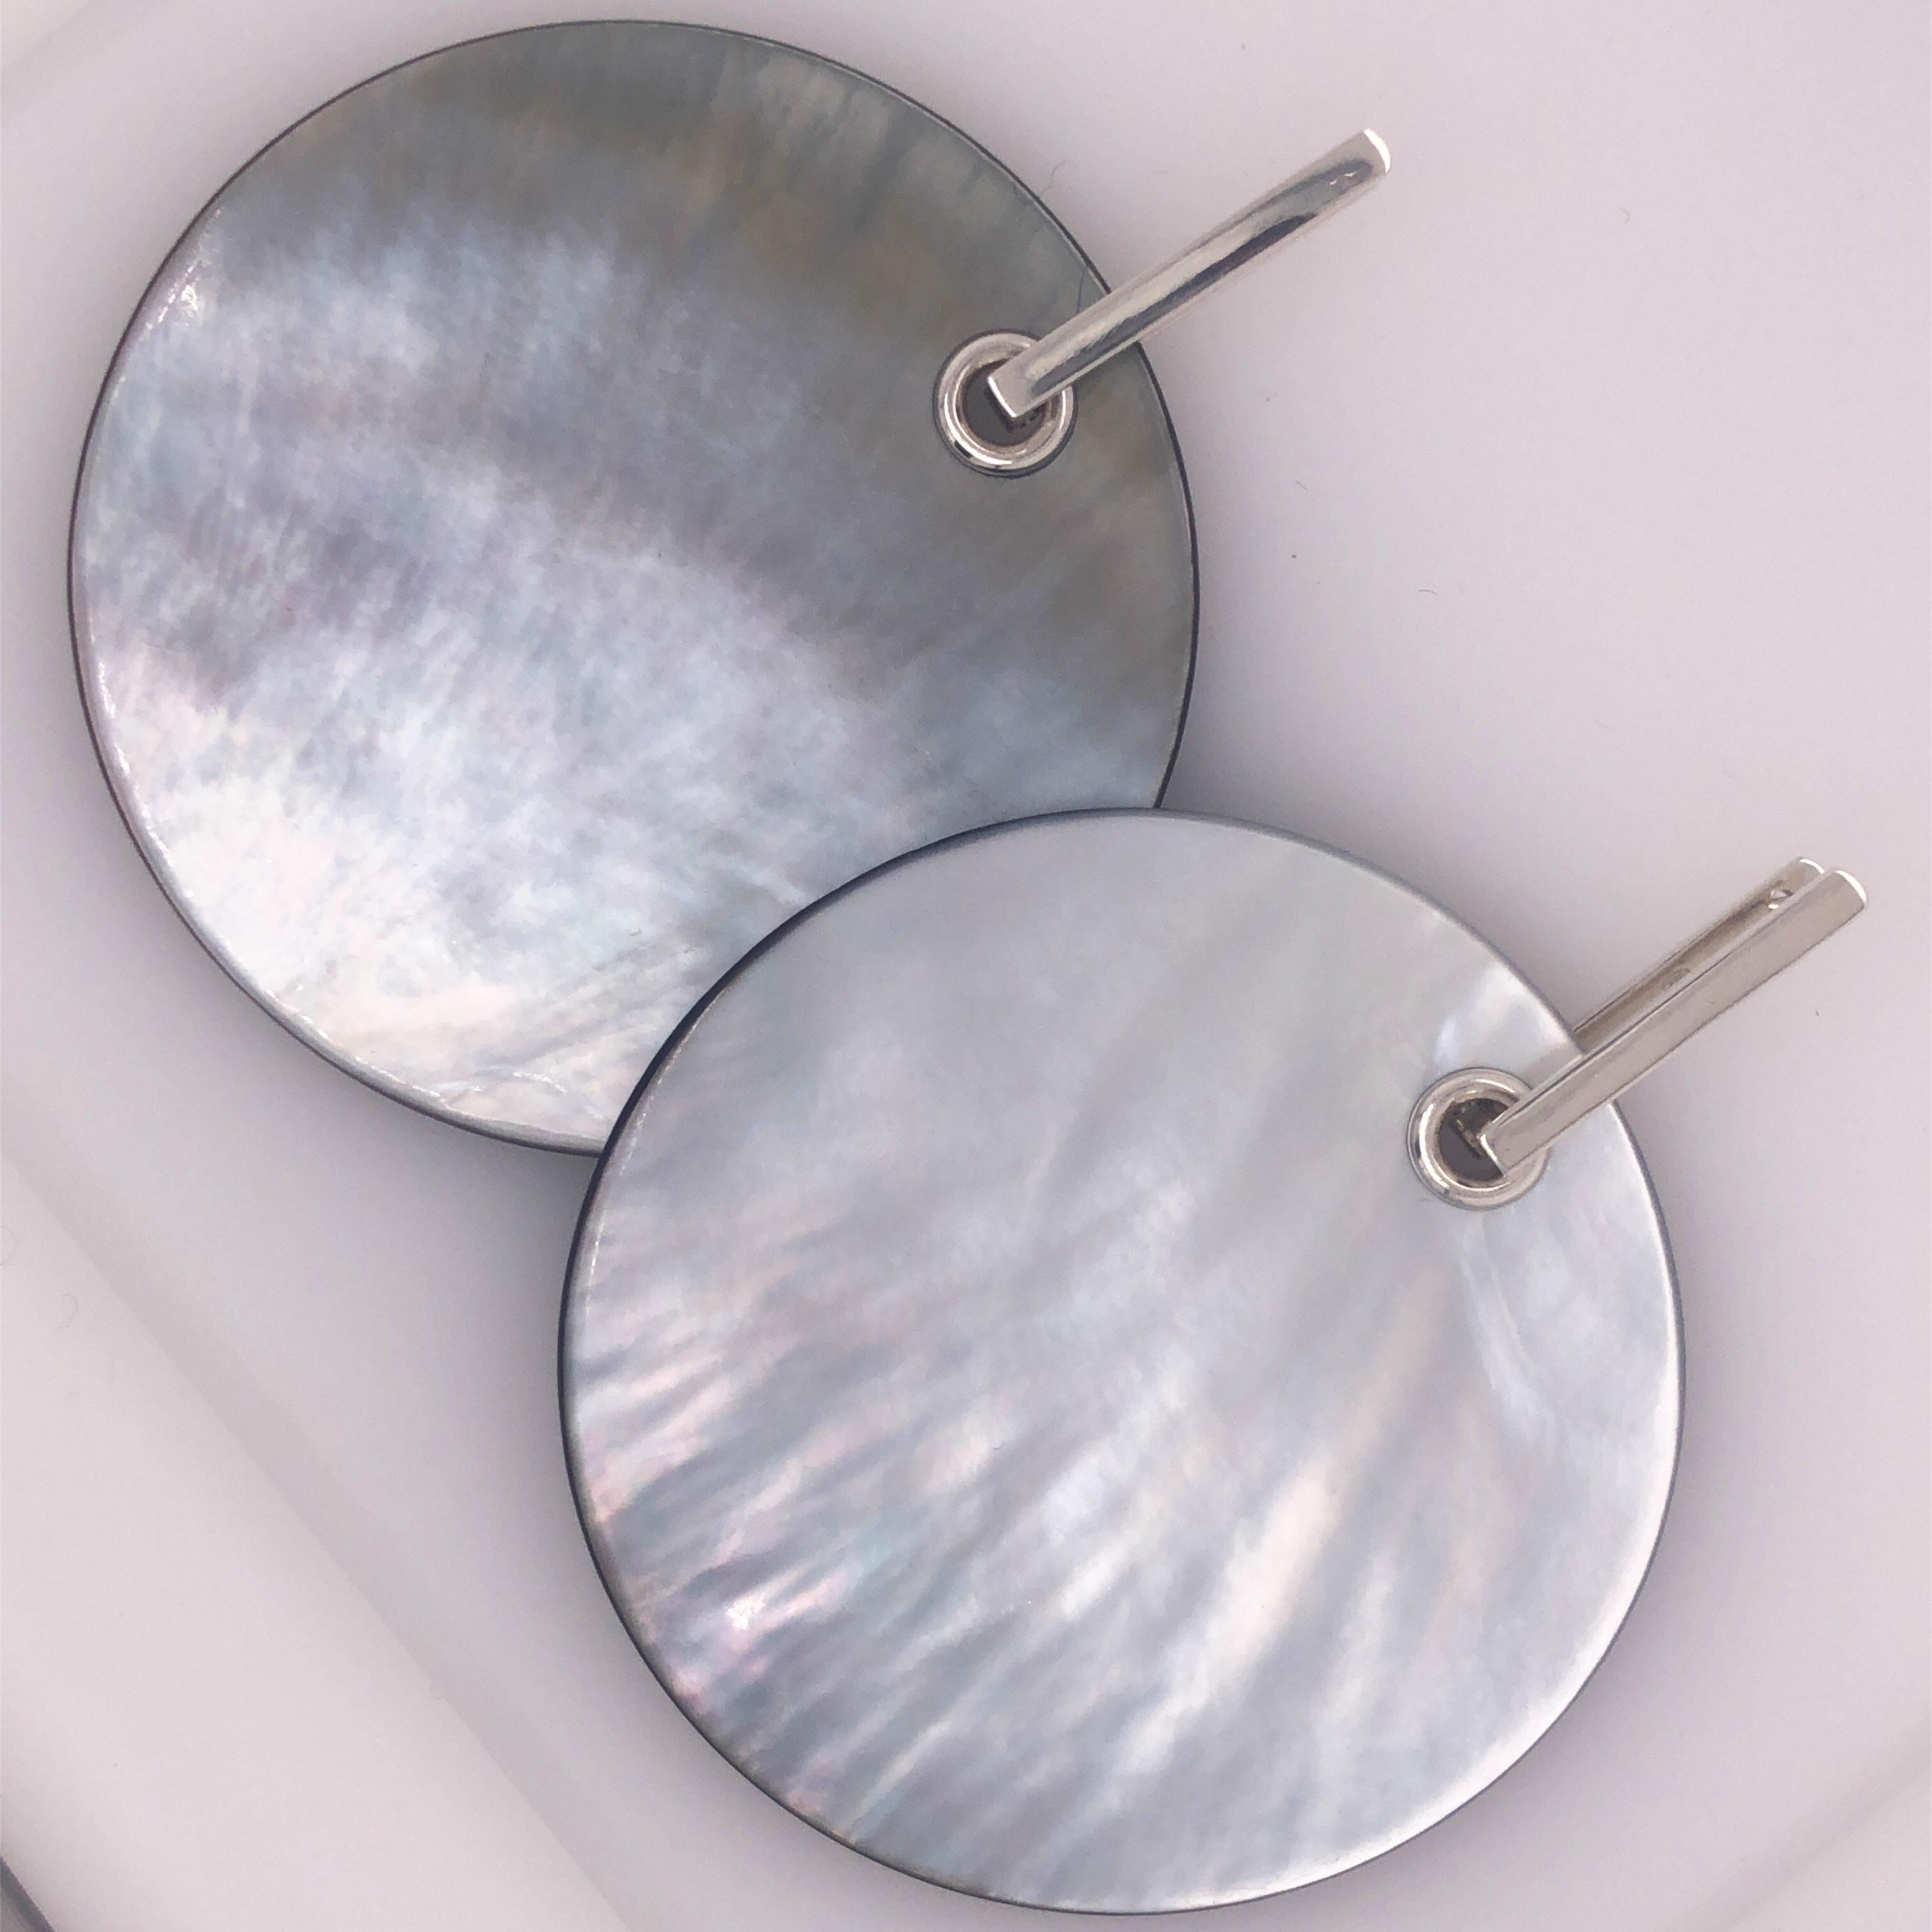 Einzigartige, absolut schicke, abnehmbare, hellgraue, handemaillierte Perlmuttscheibe (2,5 Zoll, 6,5 cm Durchmesser) in einer modernen, minimalistischen Sterlingsilberfassung.
Die Scheiben können beidseitig getragen werden, auf der Rückseite mit